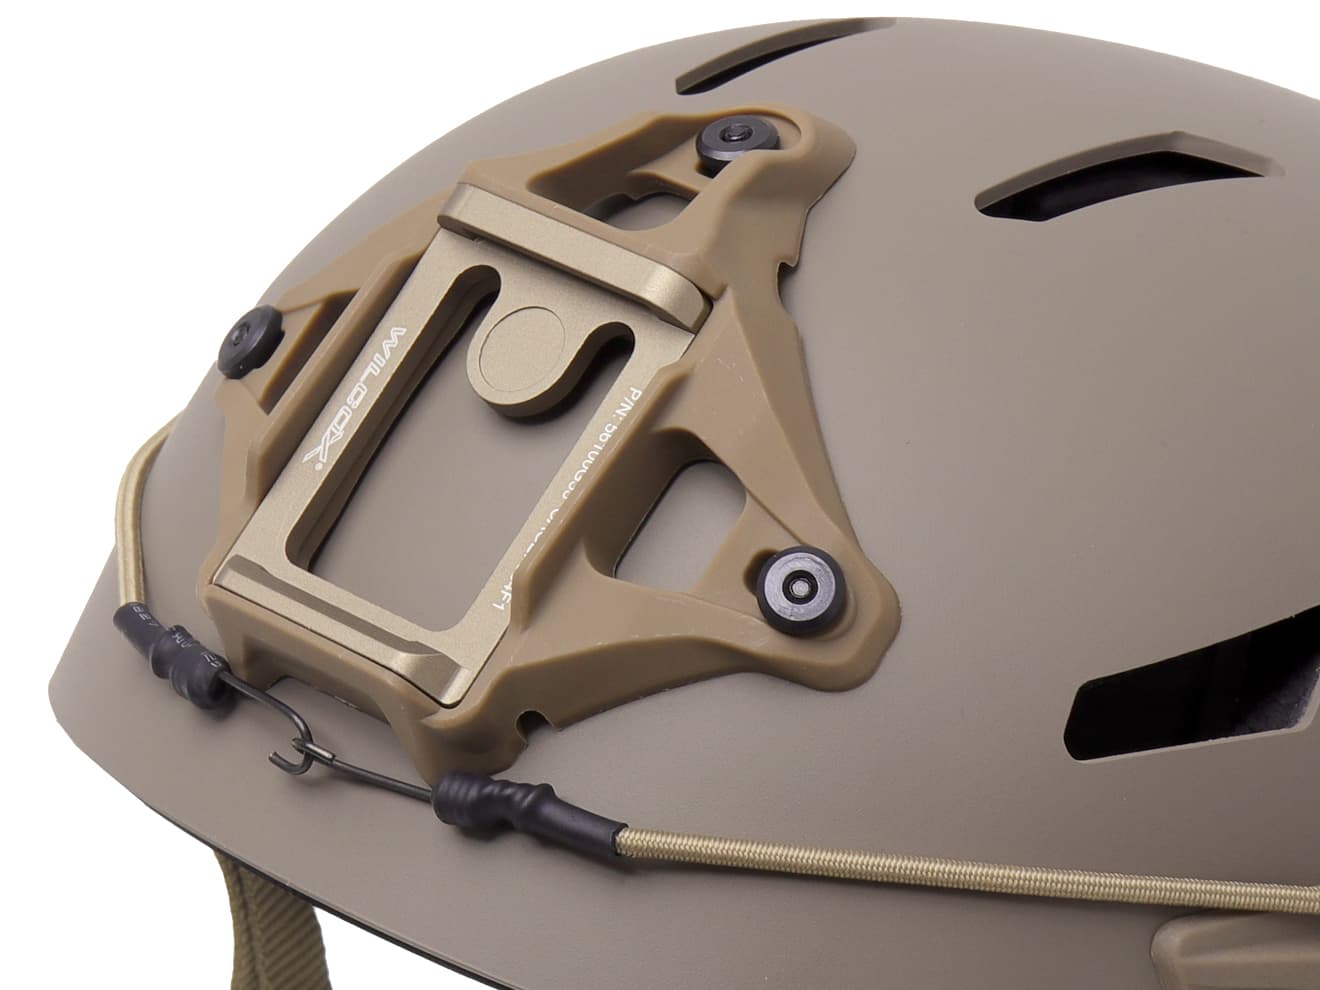 FMA GALVIONタイプ Caiman Bump タクティカルヘルメット M/Lサイズ [カラー：BK / TAN]